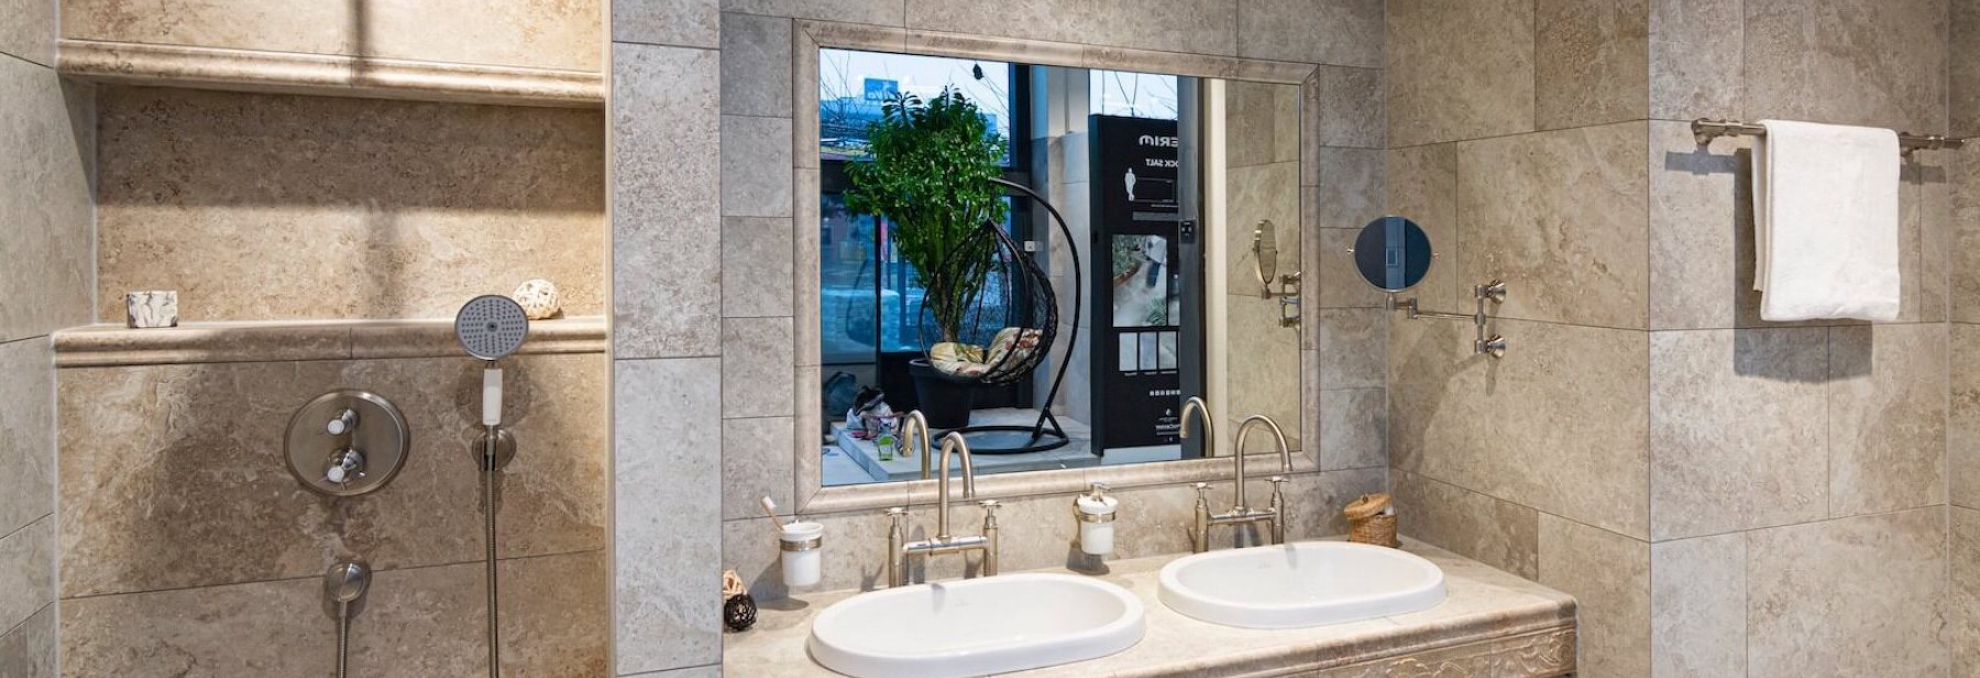 Koupelna v designu kamene ze série Travertino Romano